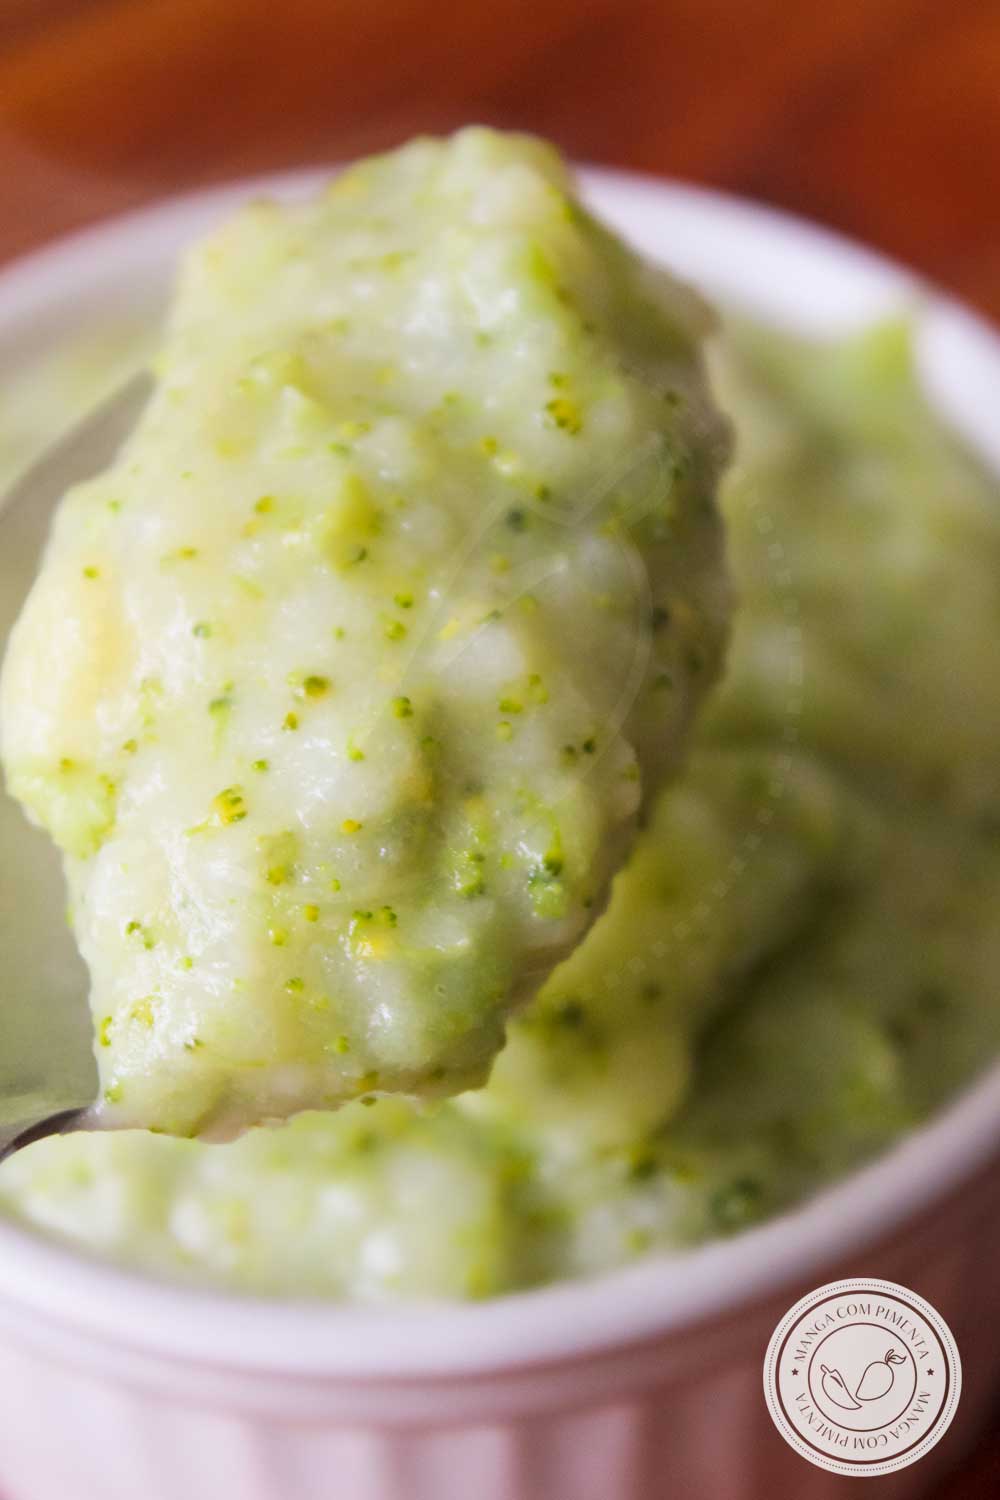 Receita de Purê de Brócolis - um acompanhamento delicioso para o almoço ou jantar da semana da sua família!